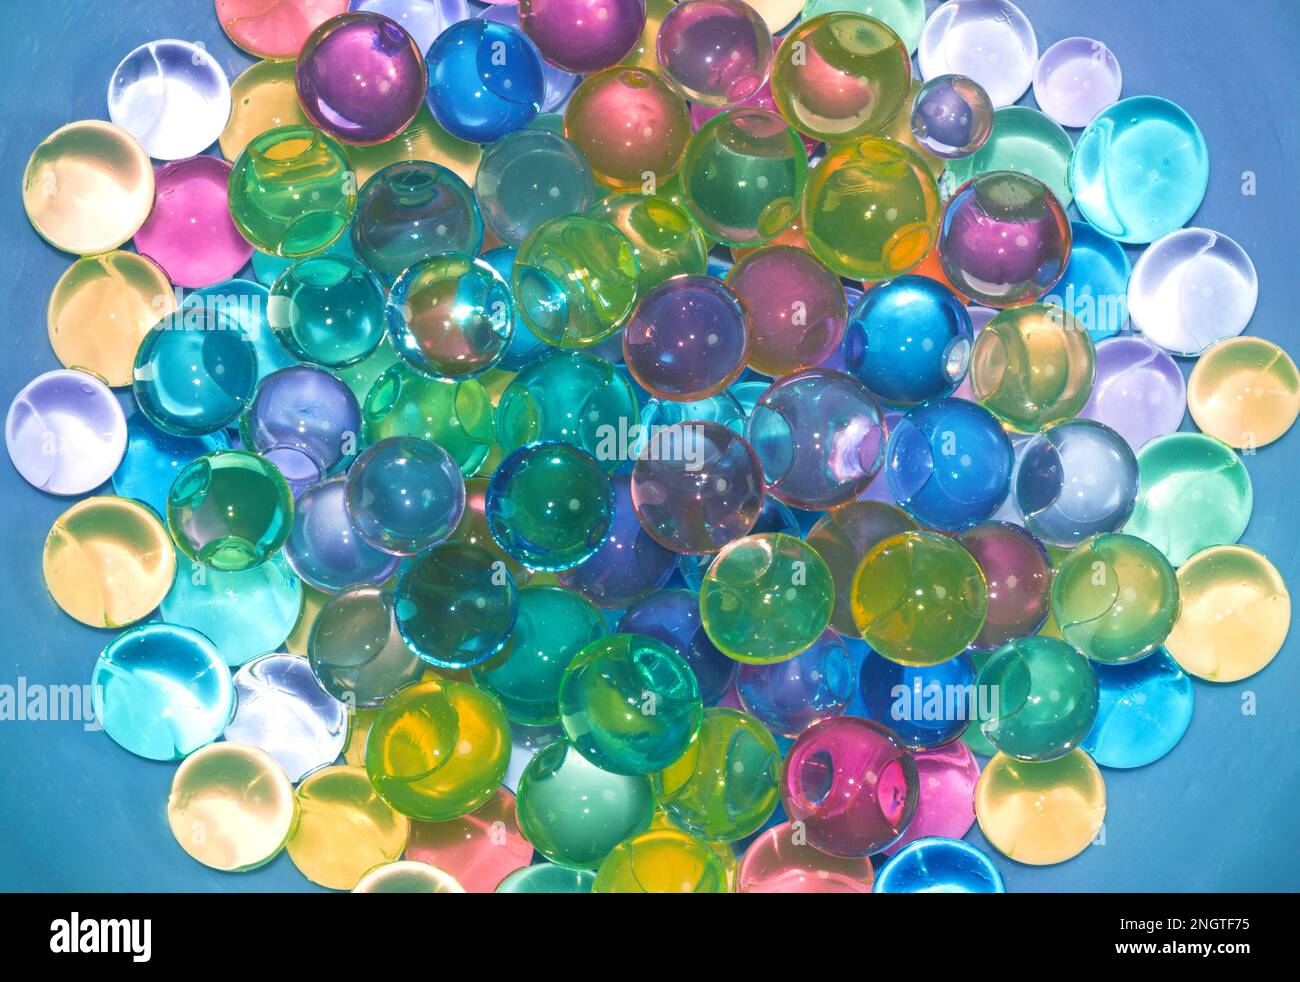 Masa de canicas de vidrio fotografías e imágenes de alta resolución - Alamy